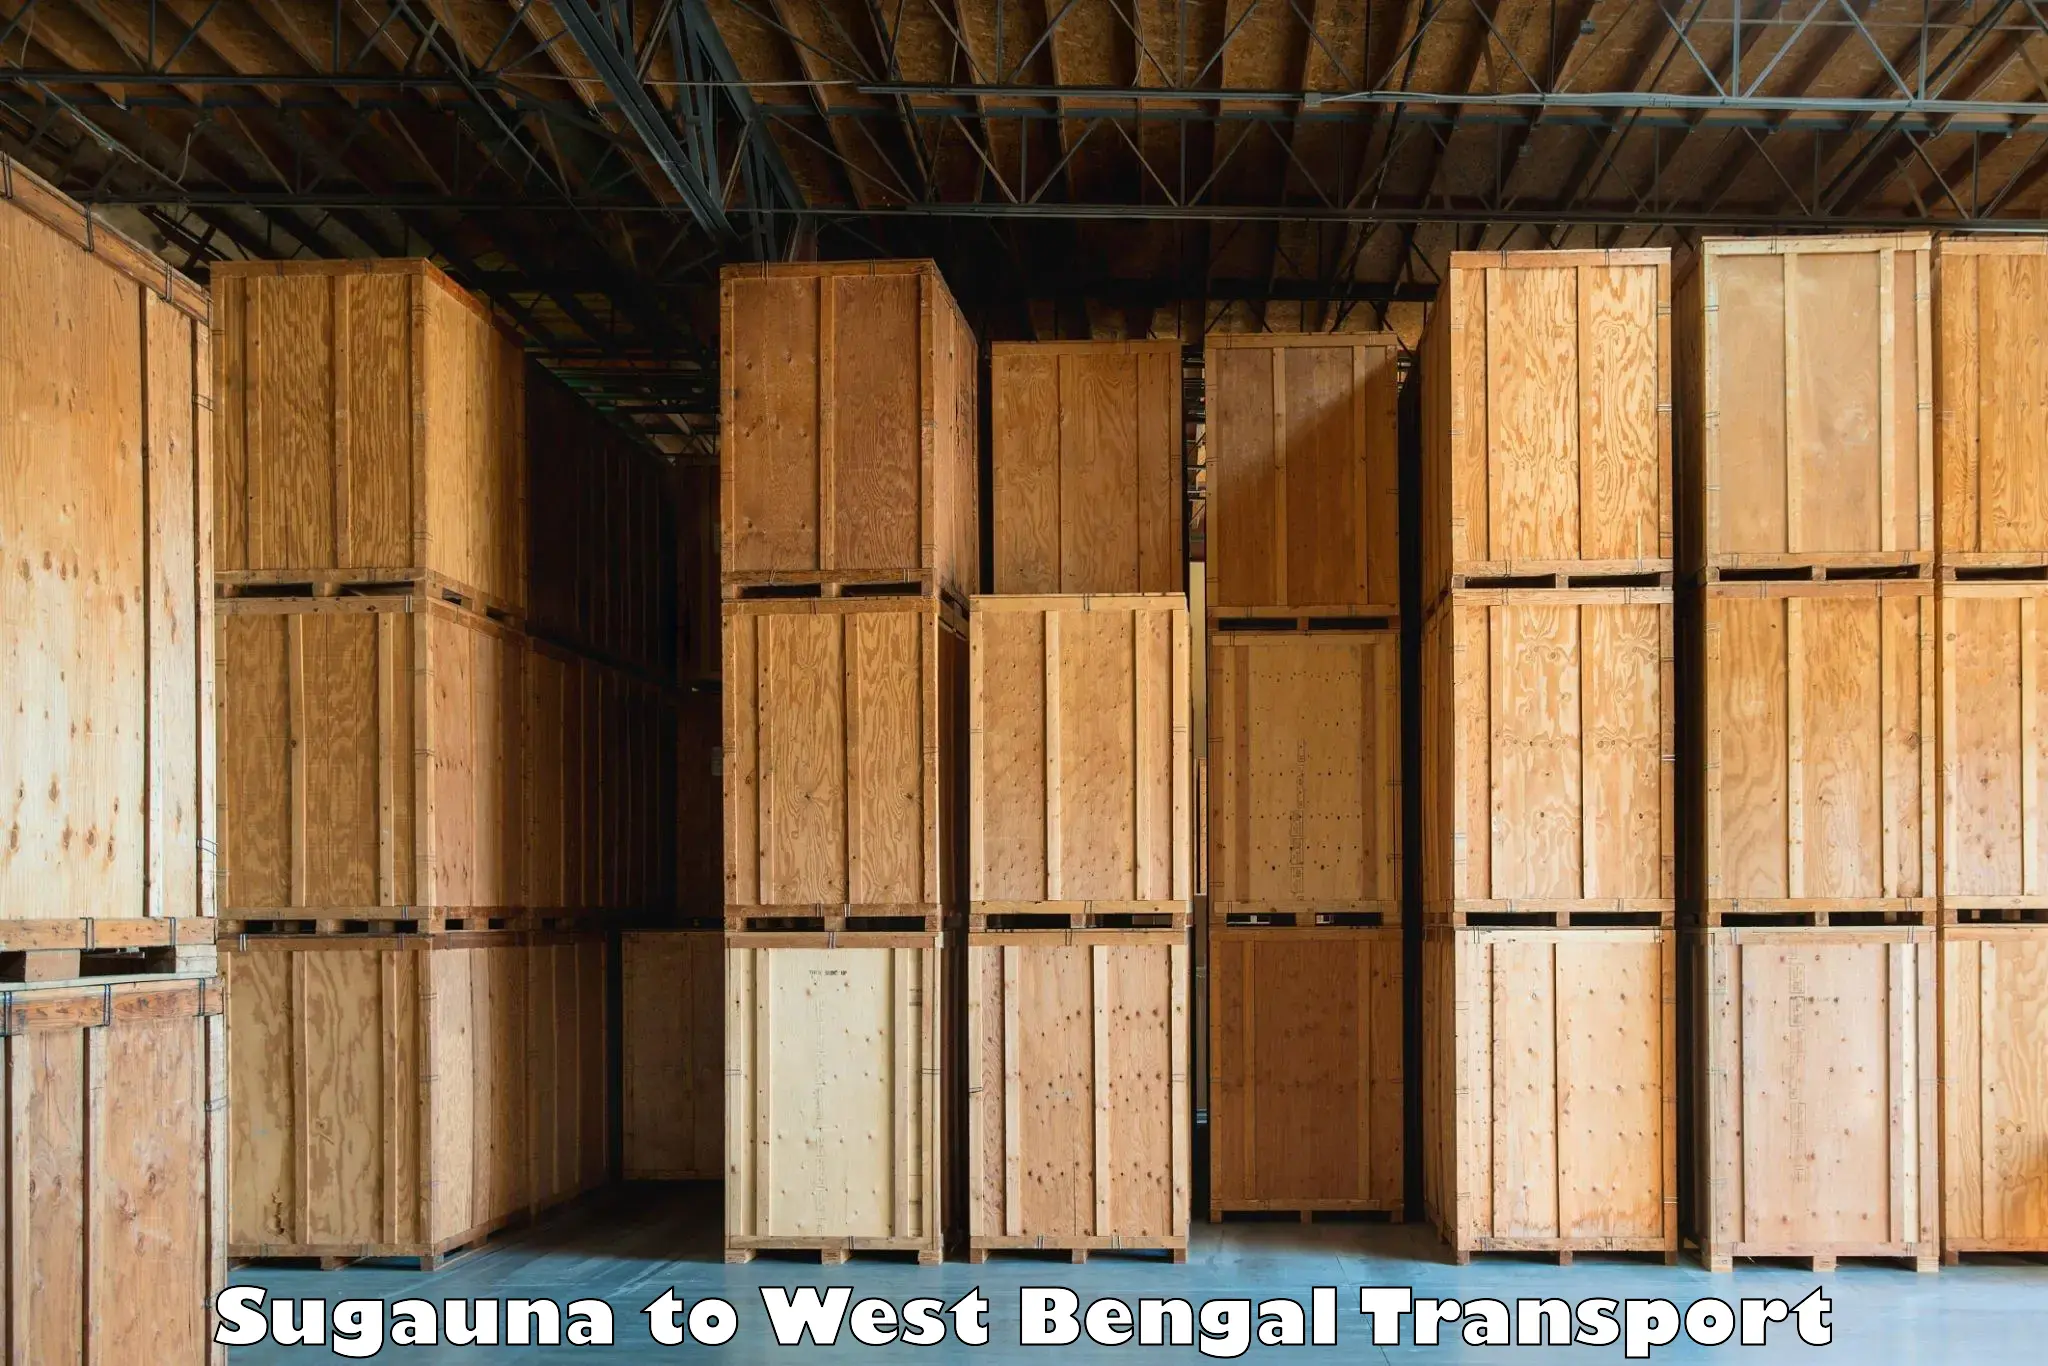 Nearest transport service Sugauna to Raghunathganj